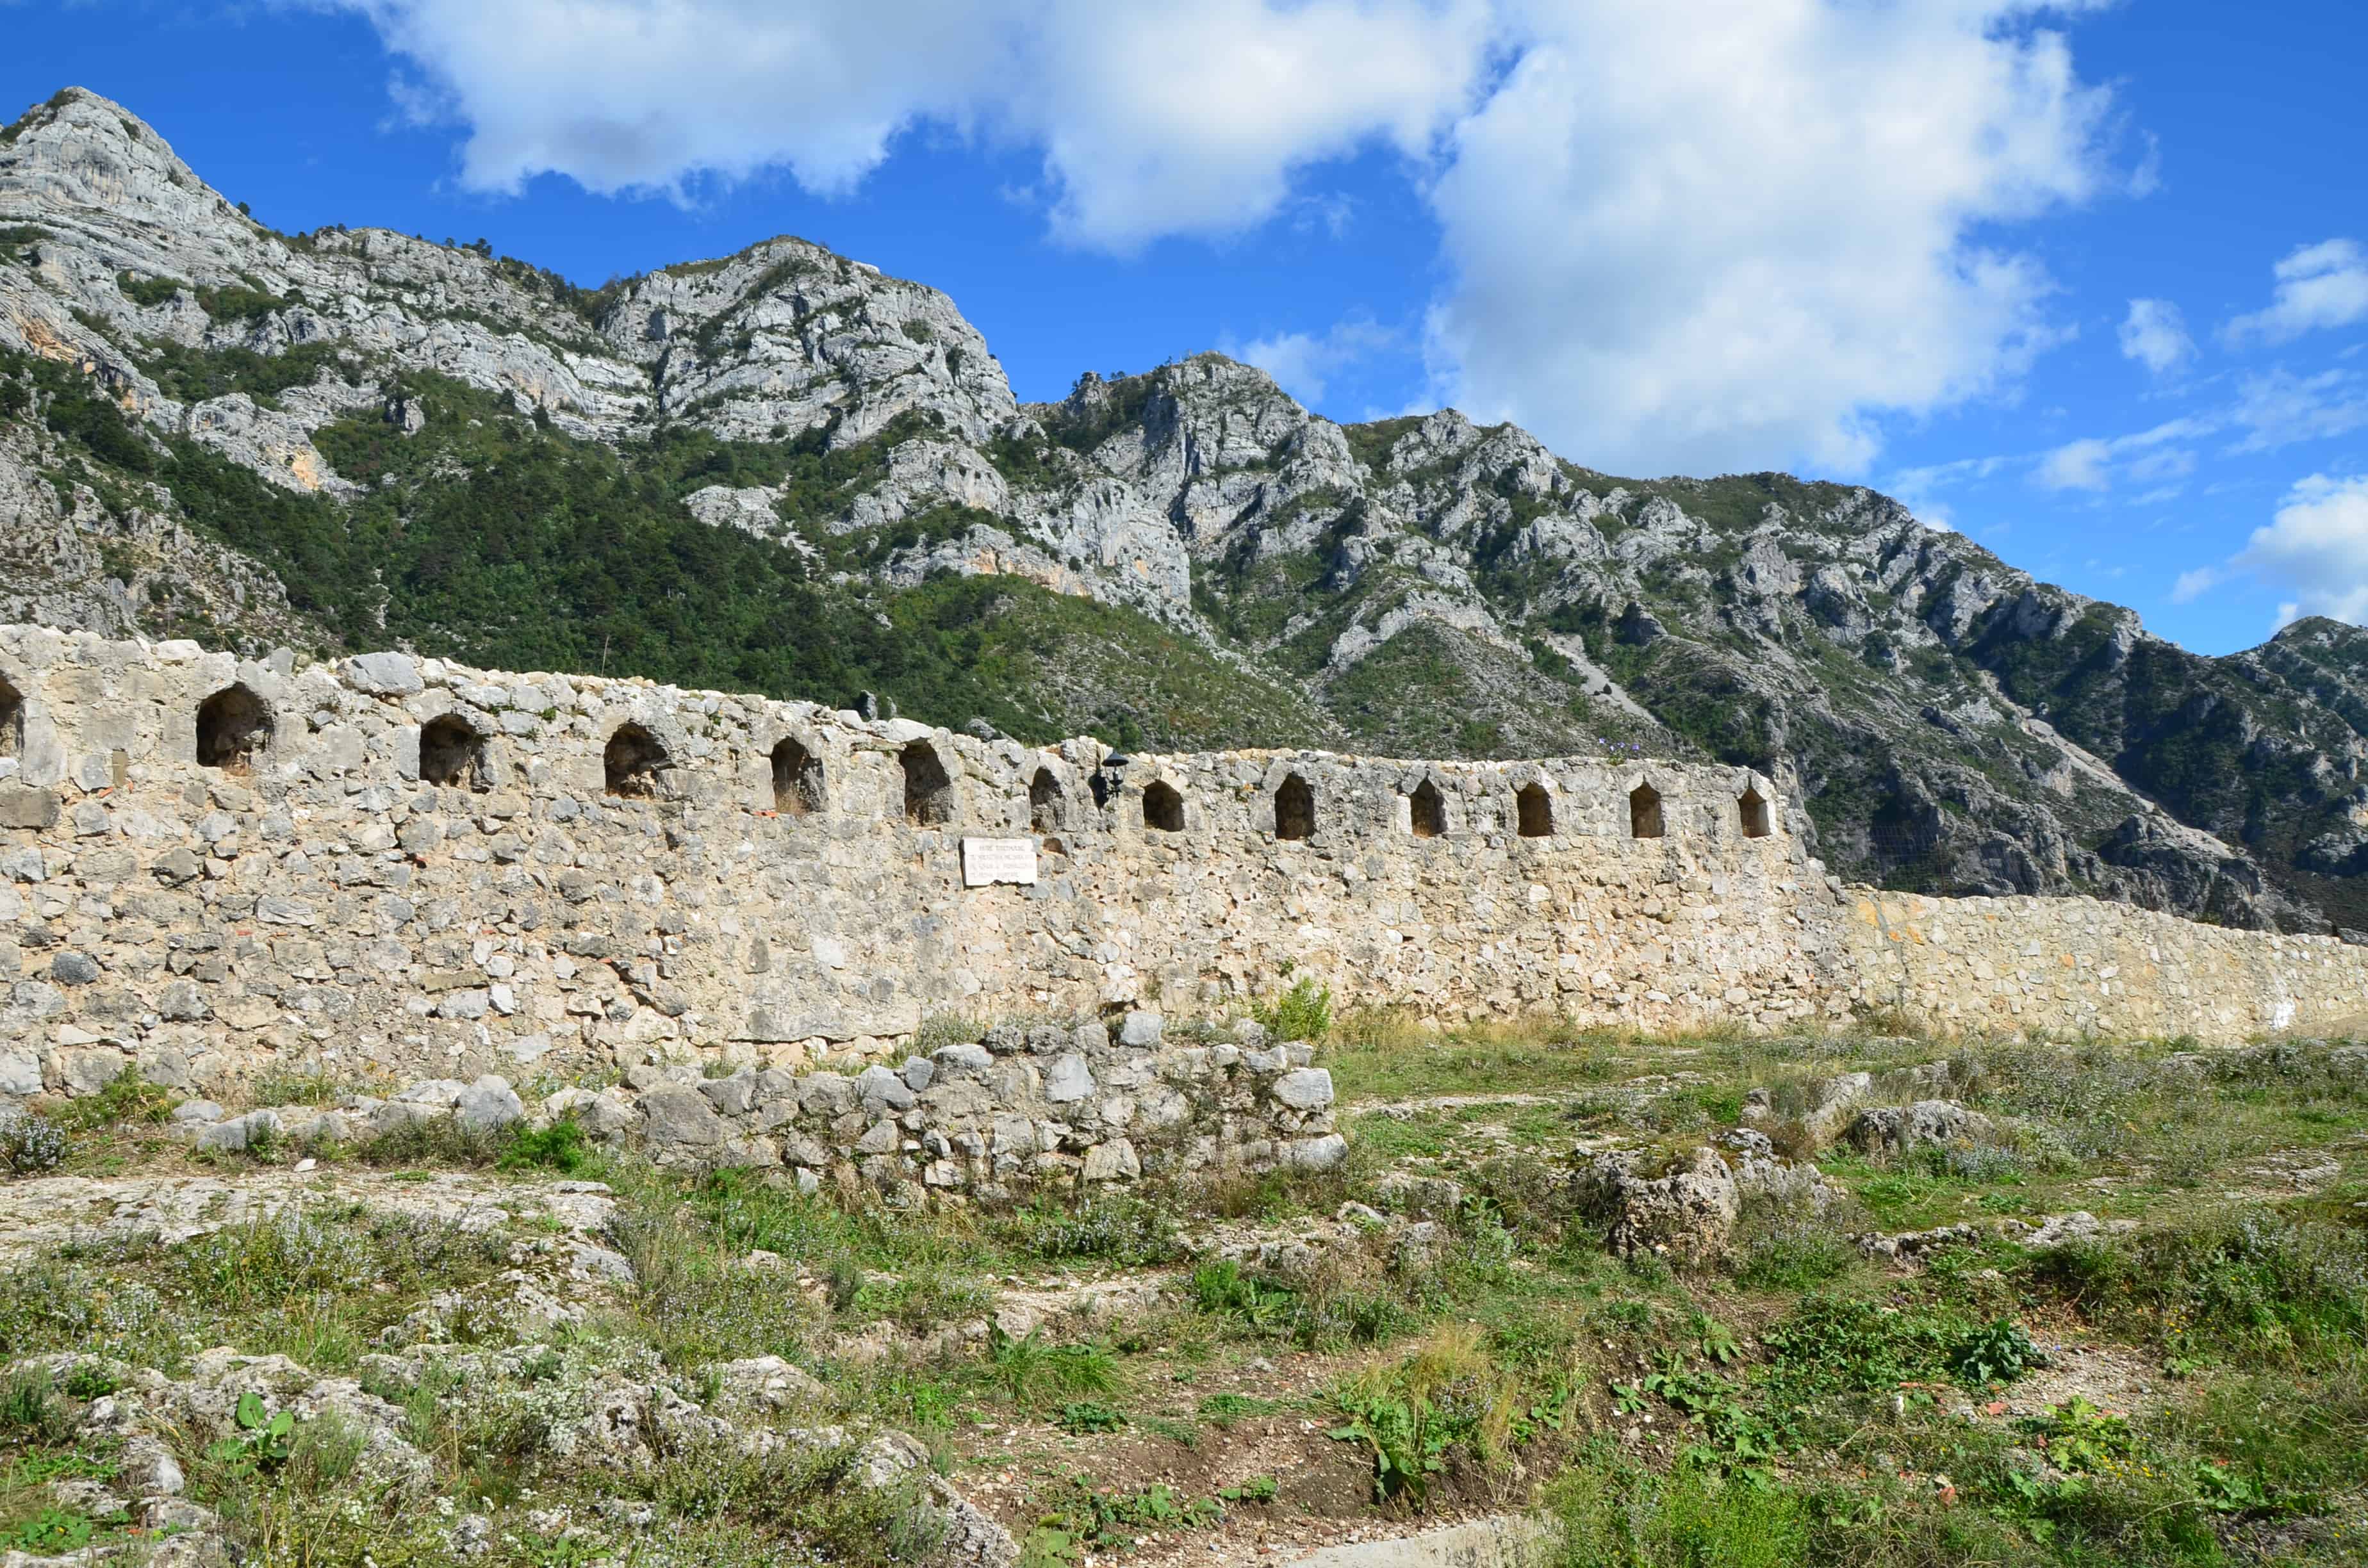 Krujë Castle in Krujë, Albania